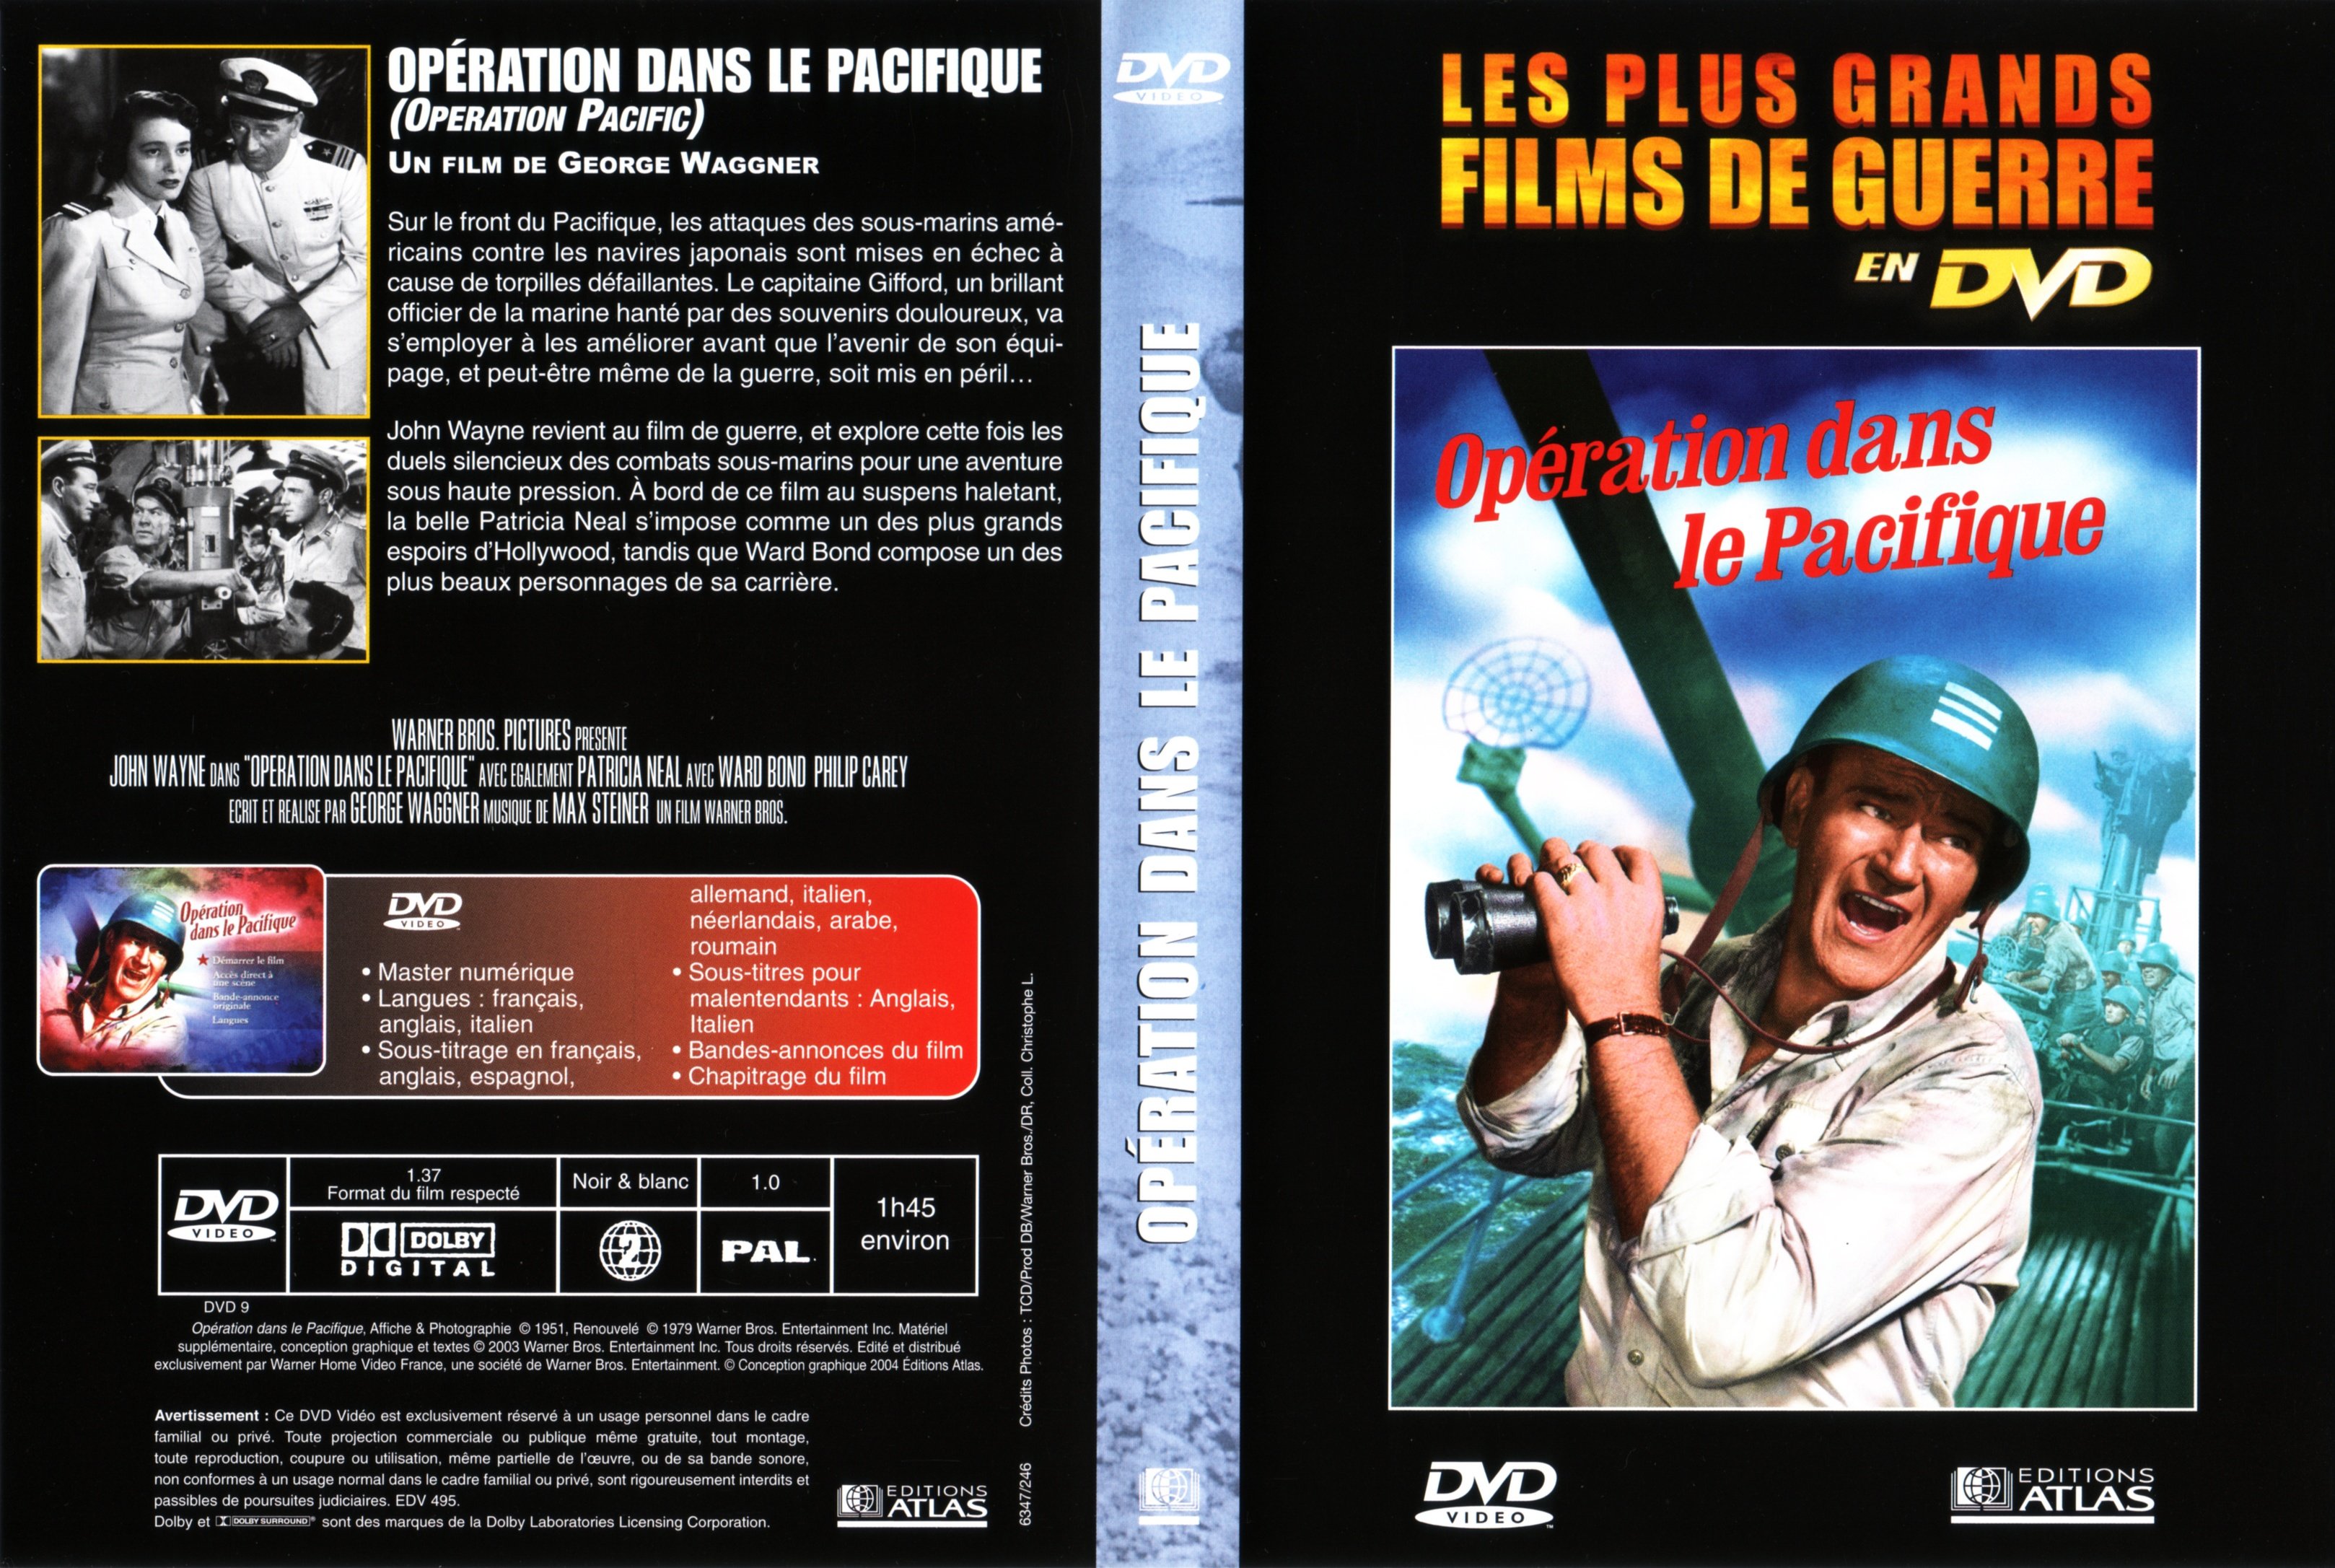 Jaquette DVD Opration dans le Pacifique